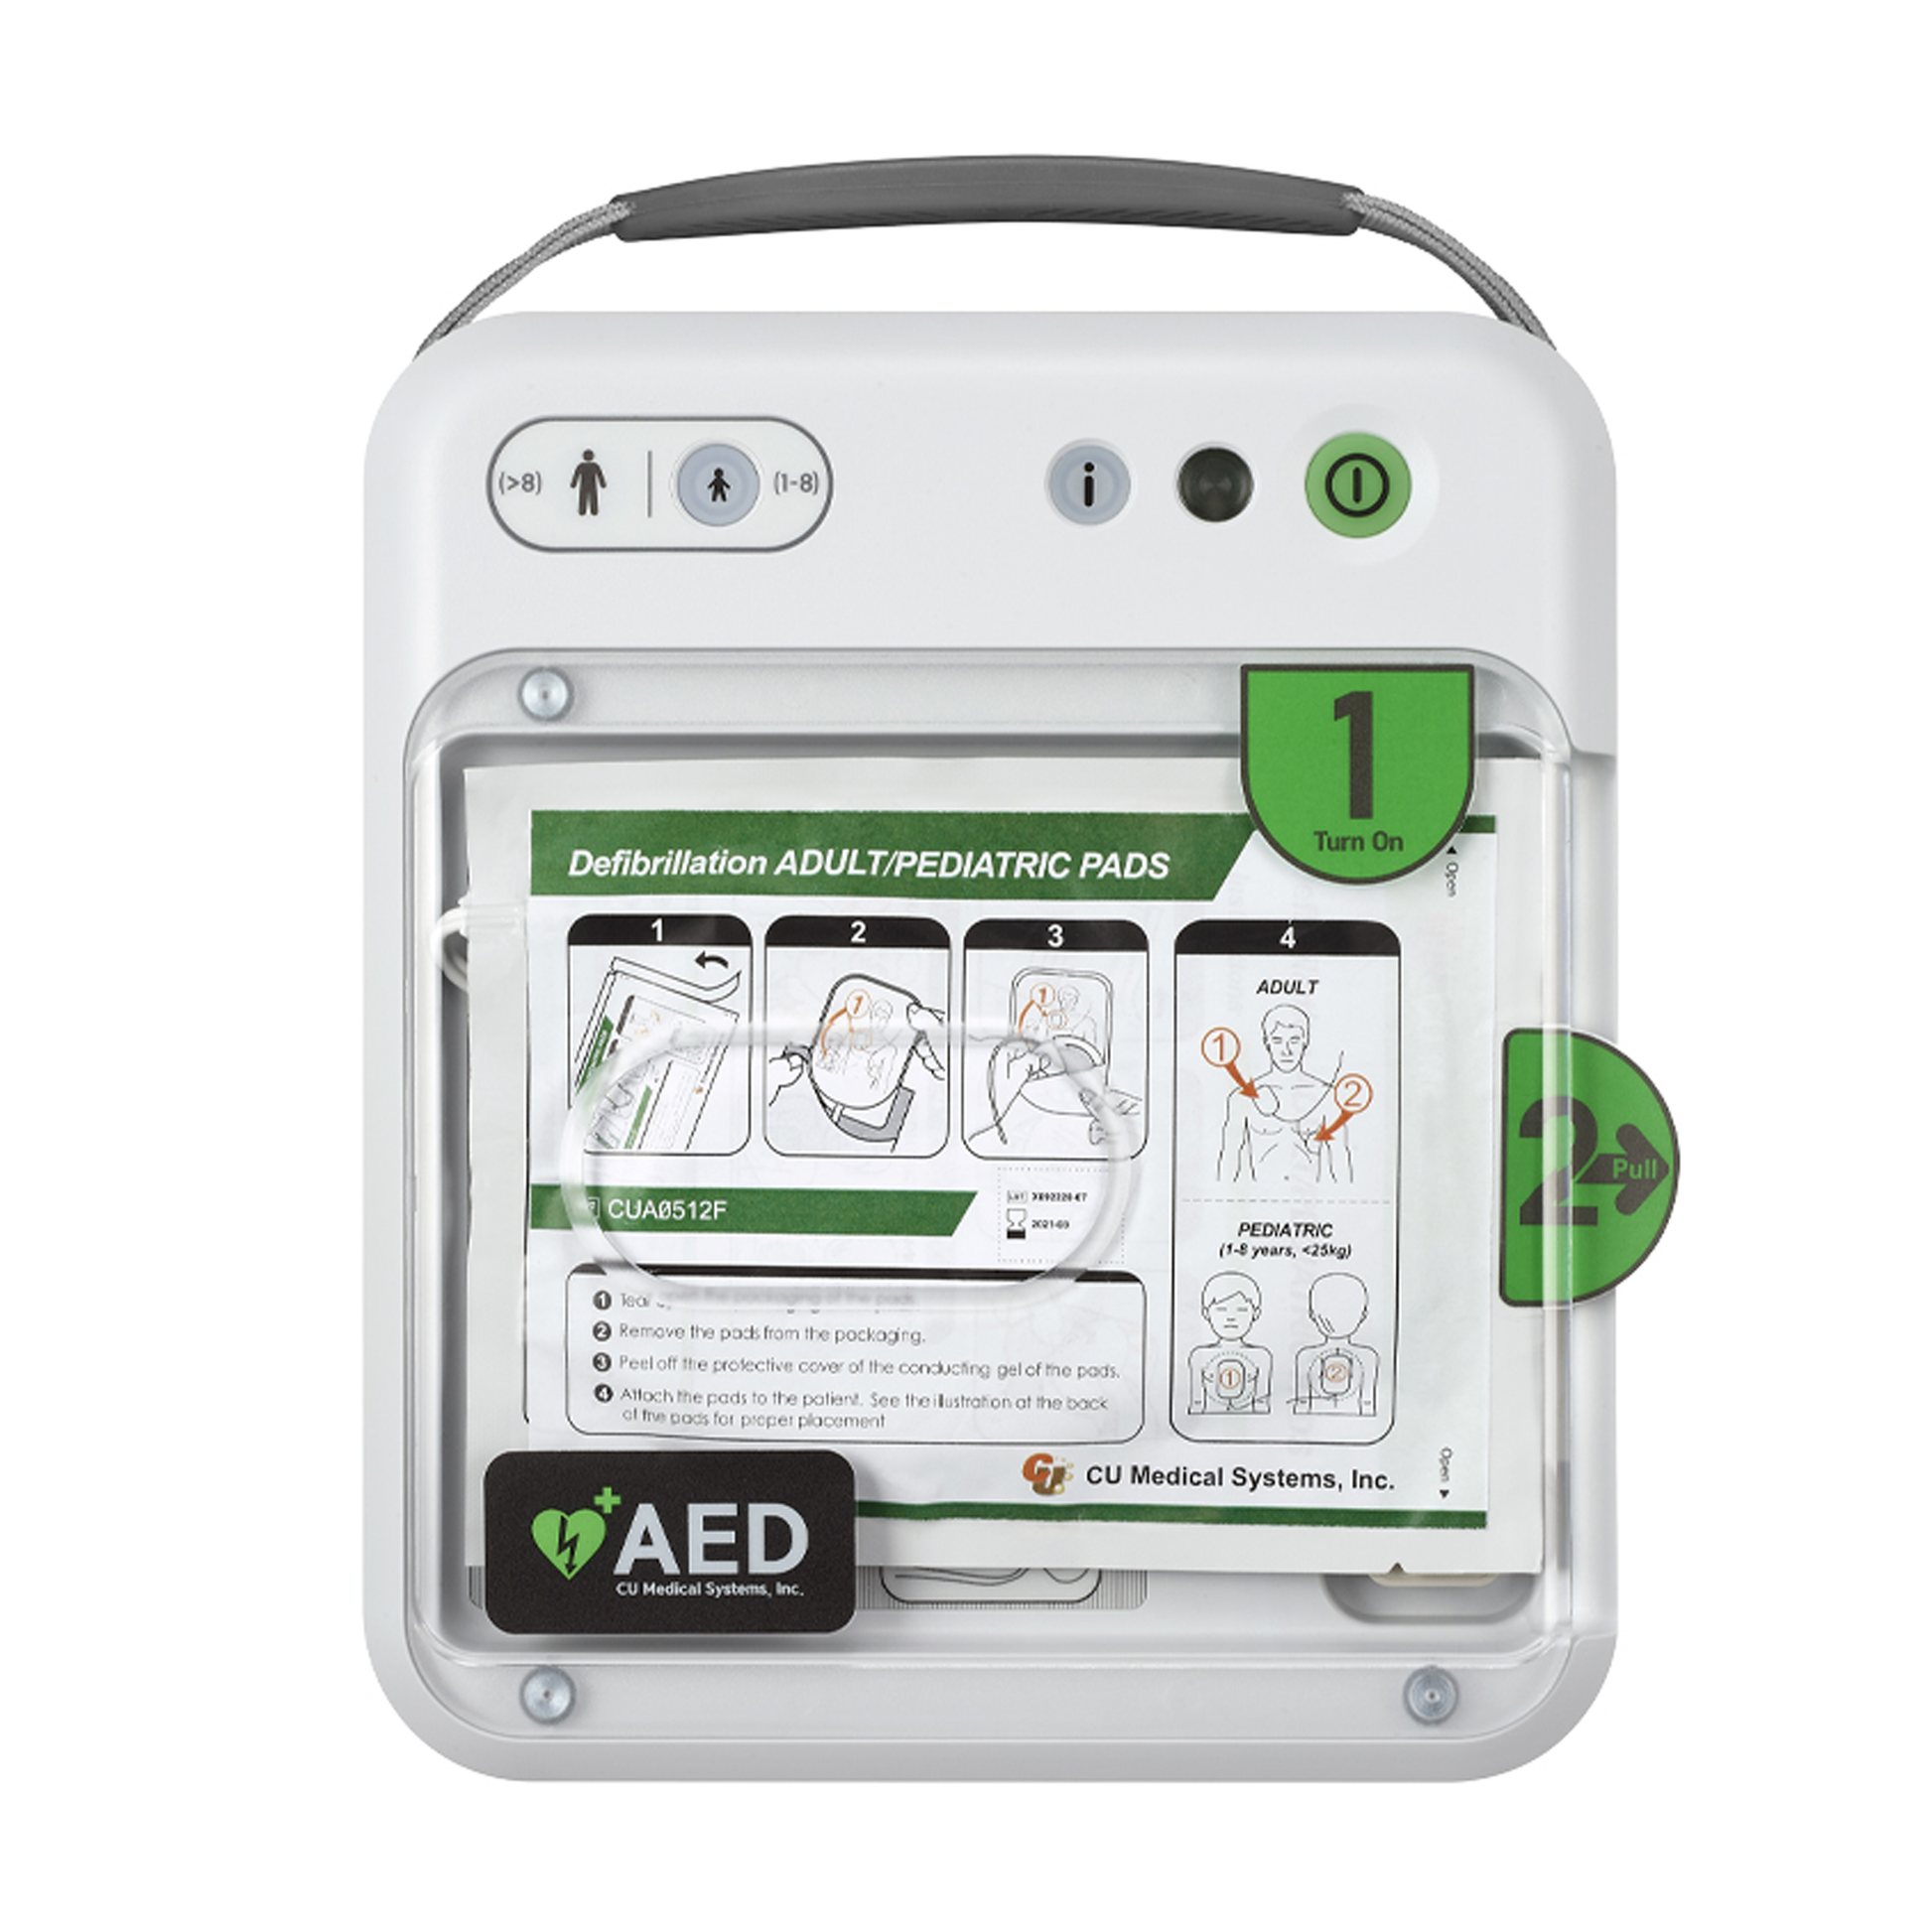 iPAD NFK200 Semi-Automatic Defibrillator.